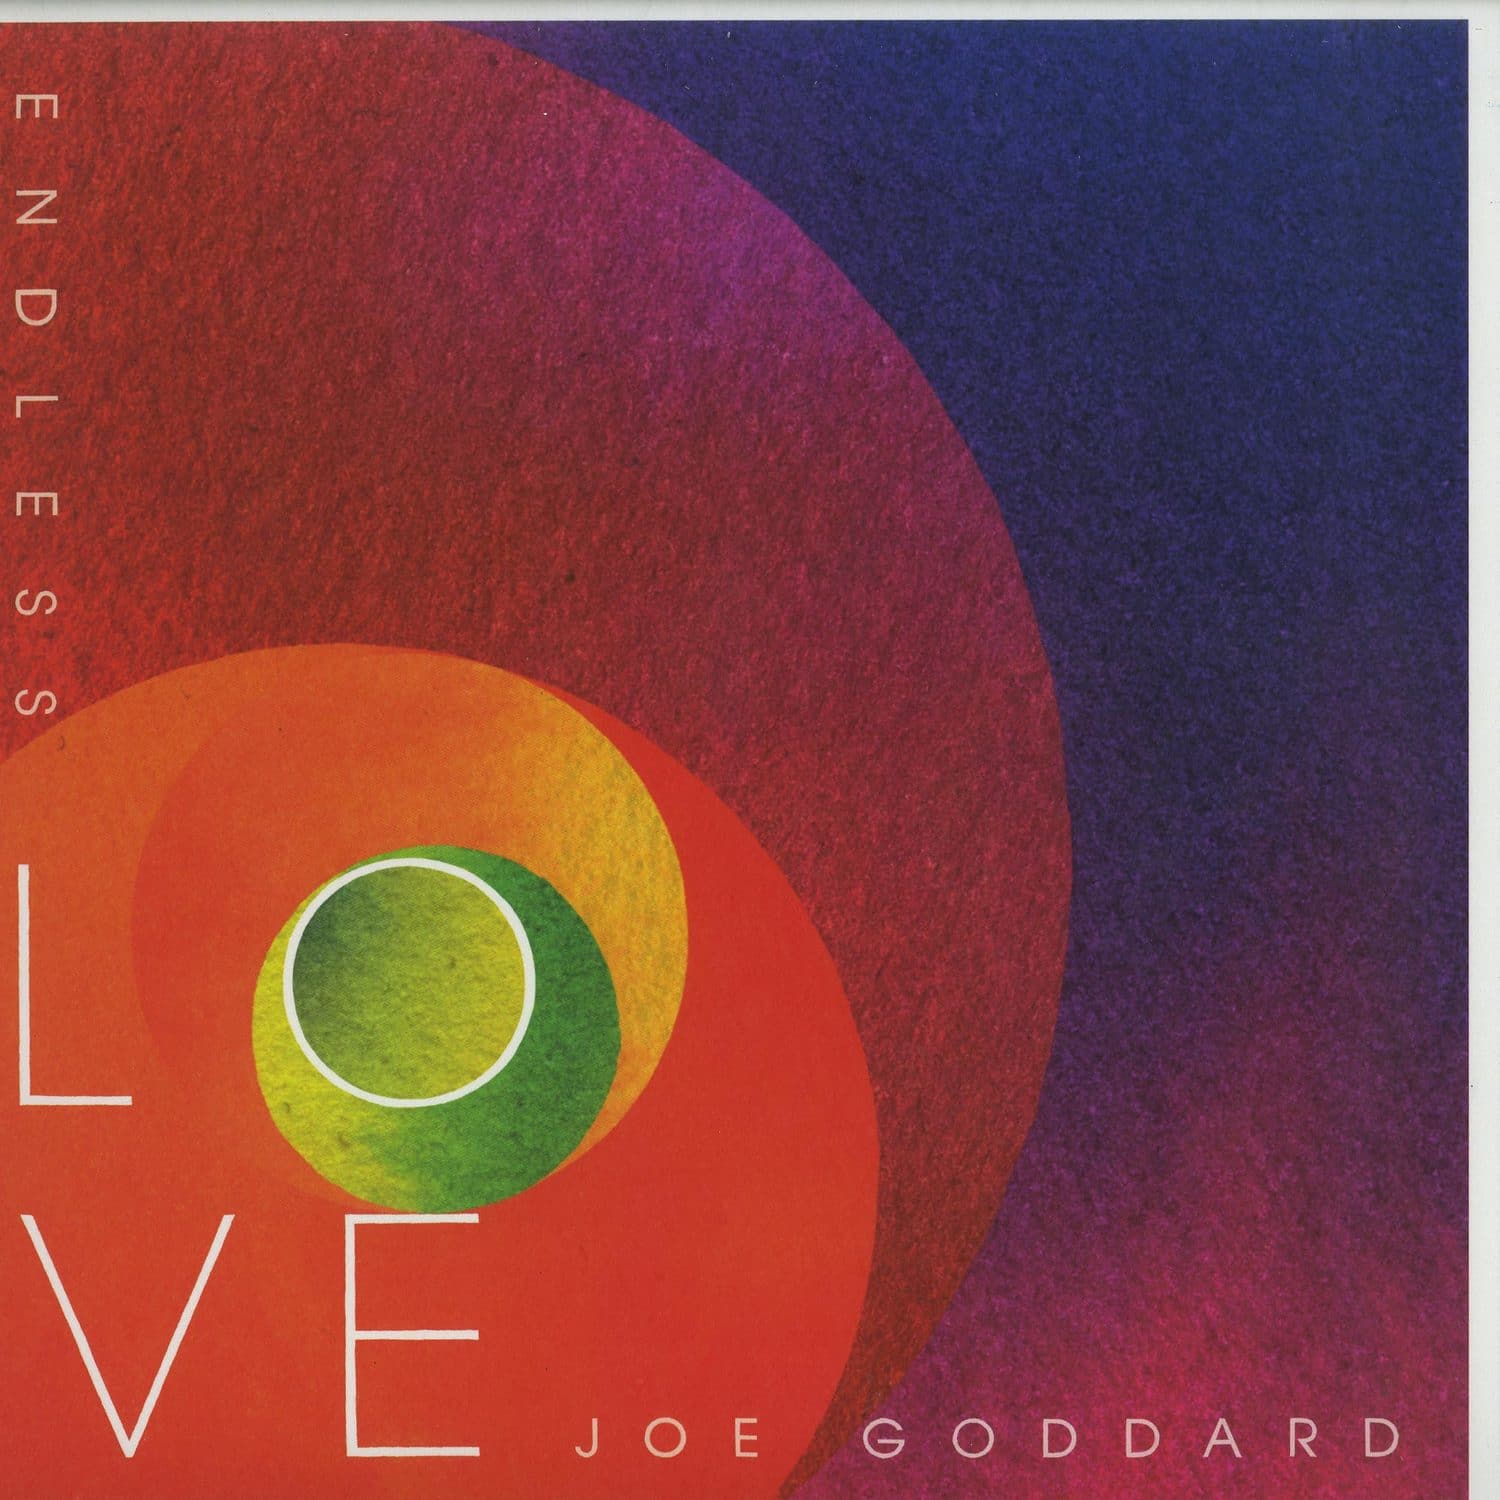 Joe Goddard - ENDLESS LOVE 